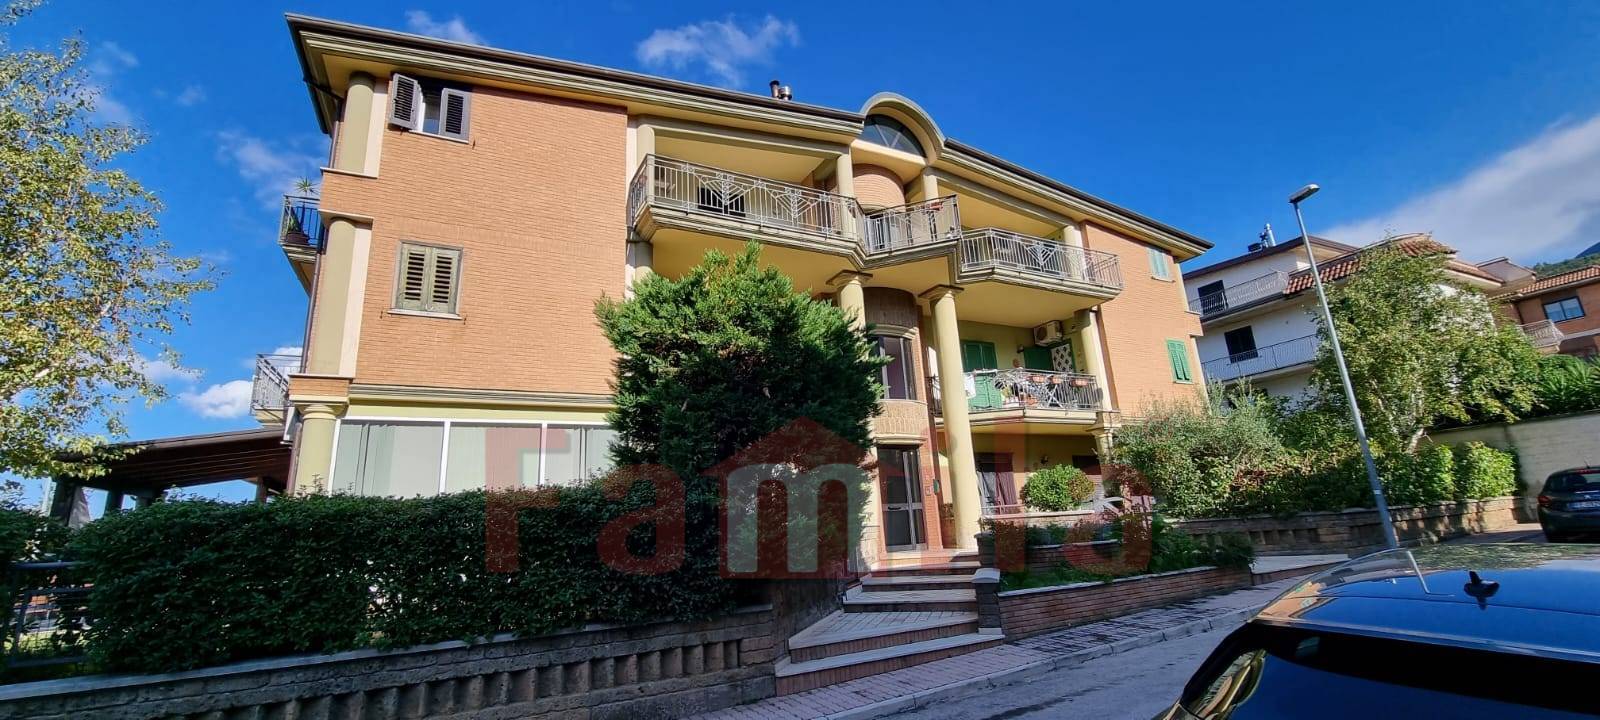 Appartamento in vendita a Quadrelle, 4 locali, prezzo € 110.000 | PortaleAgenzieImmobiliari.it